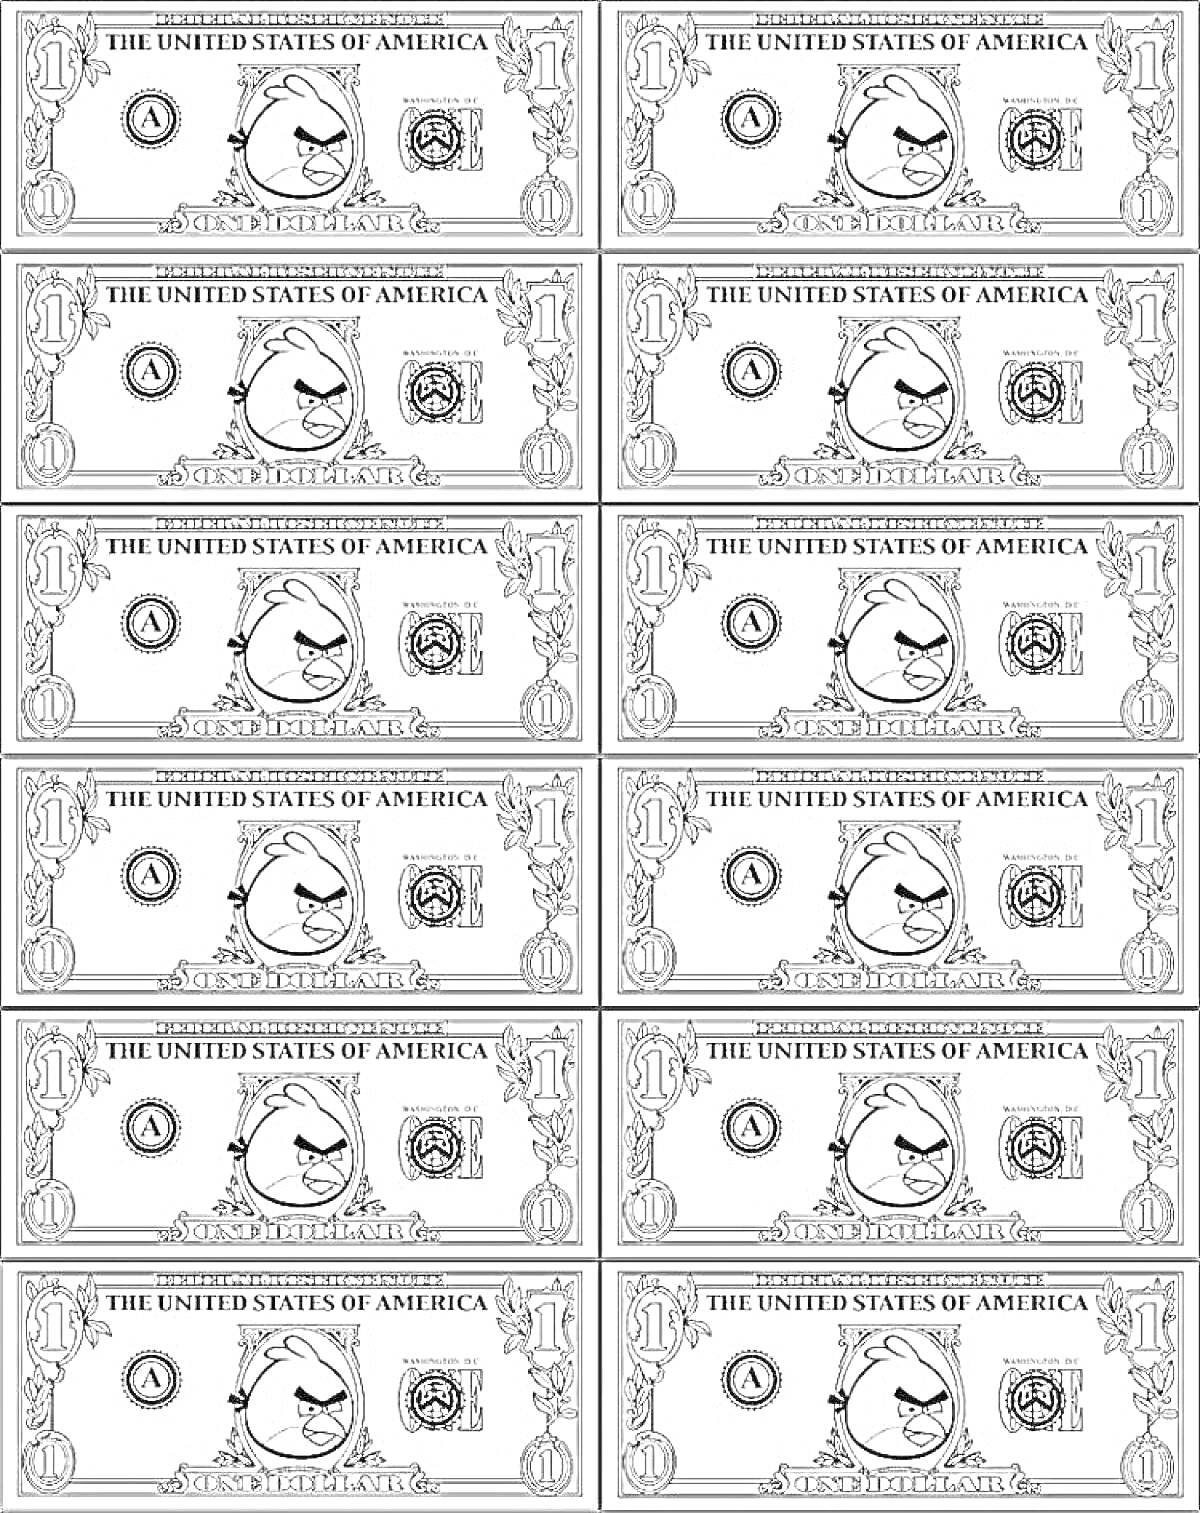 Двенадцать банкнот США с мультяшным лицом, надписями, цифрами и различными символами